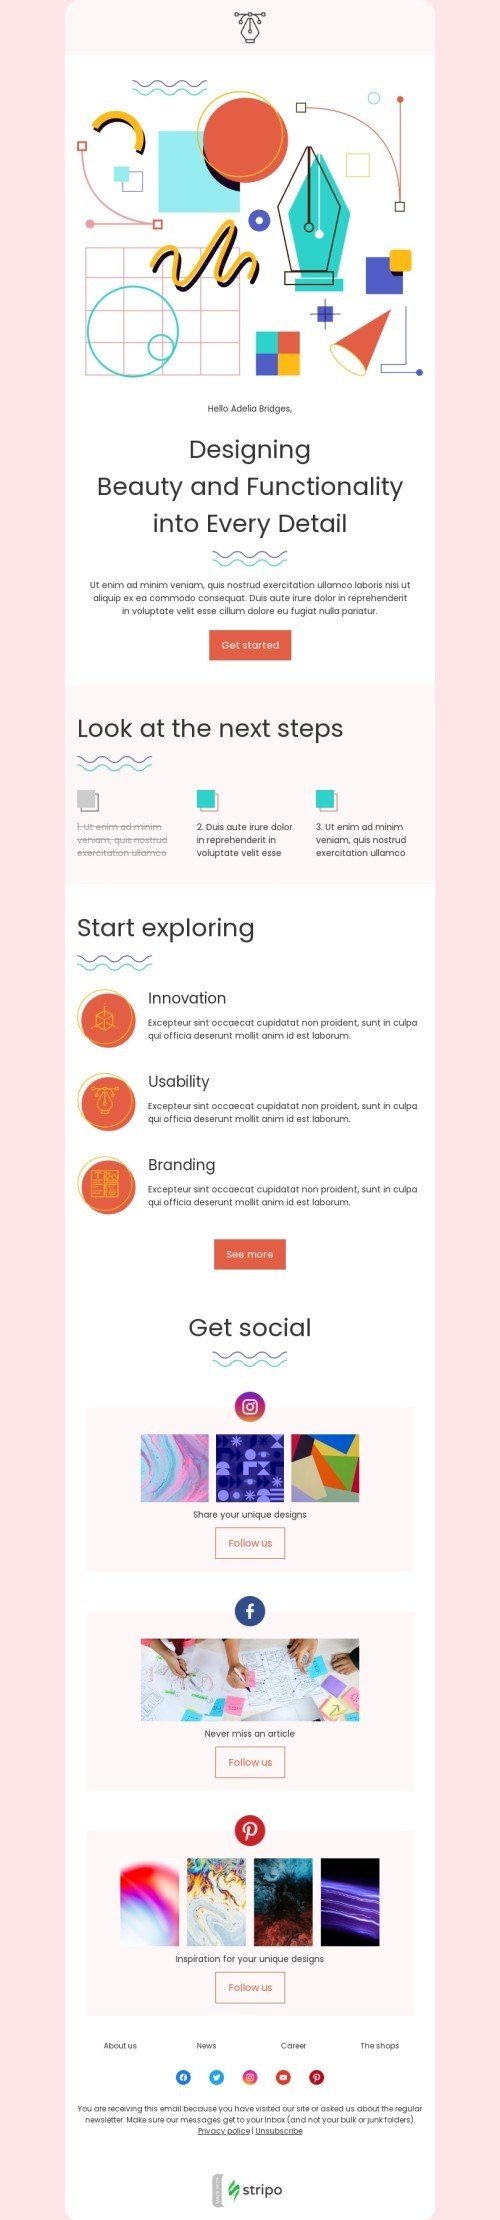 Шаблон письма к празднику День социальных сетей «Ознакомьтесь со следующими шагами» для индустрии «Бизнес» мобильный вид